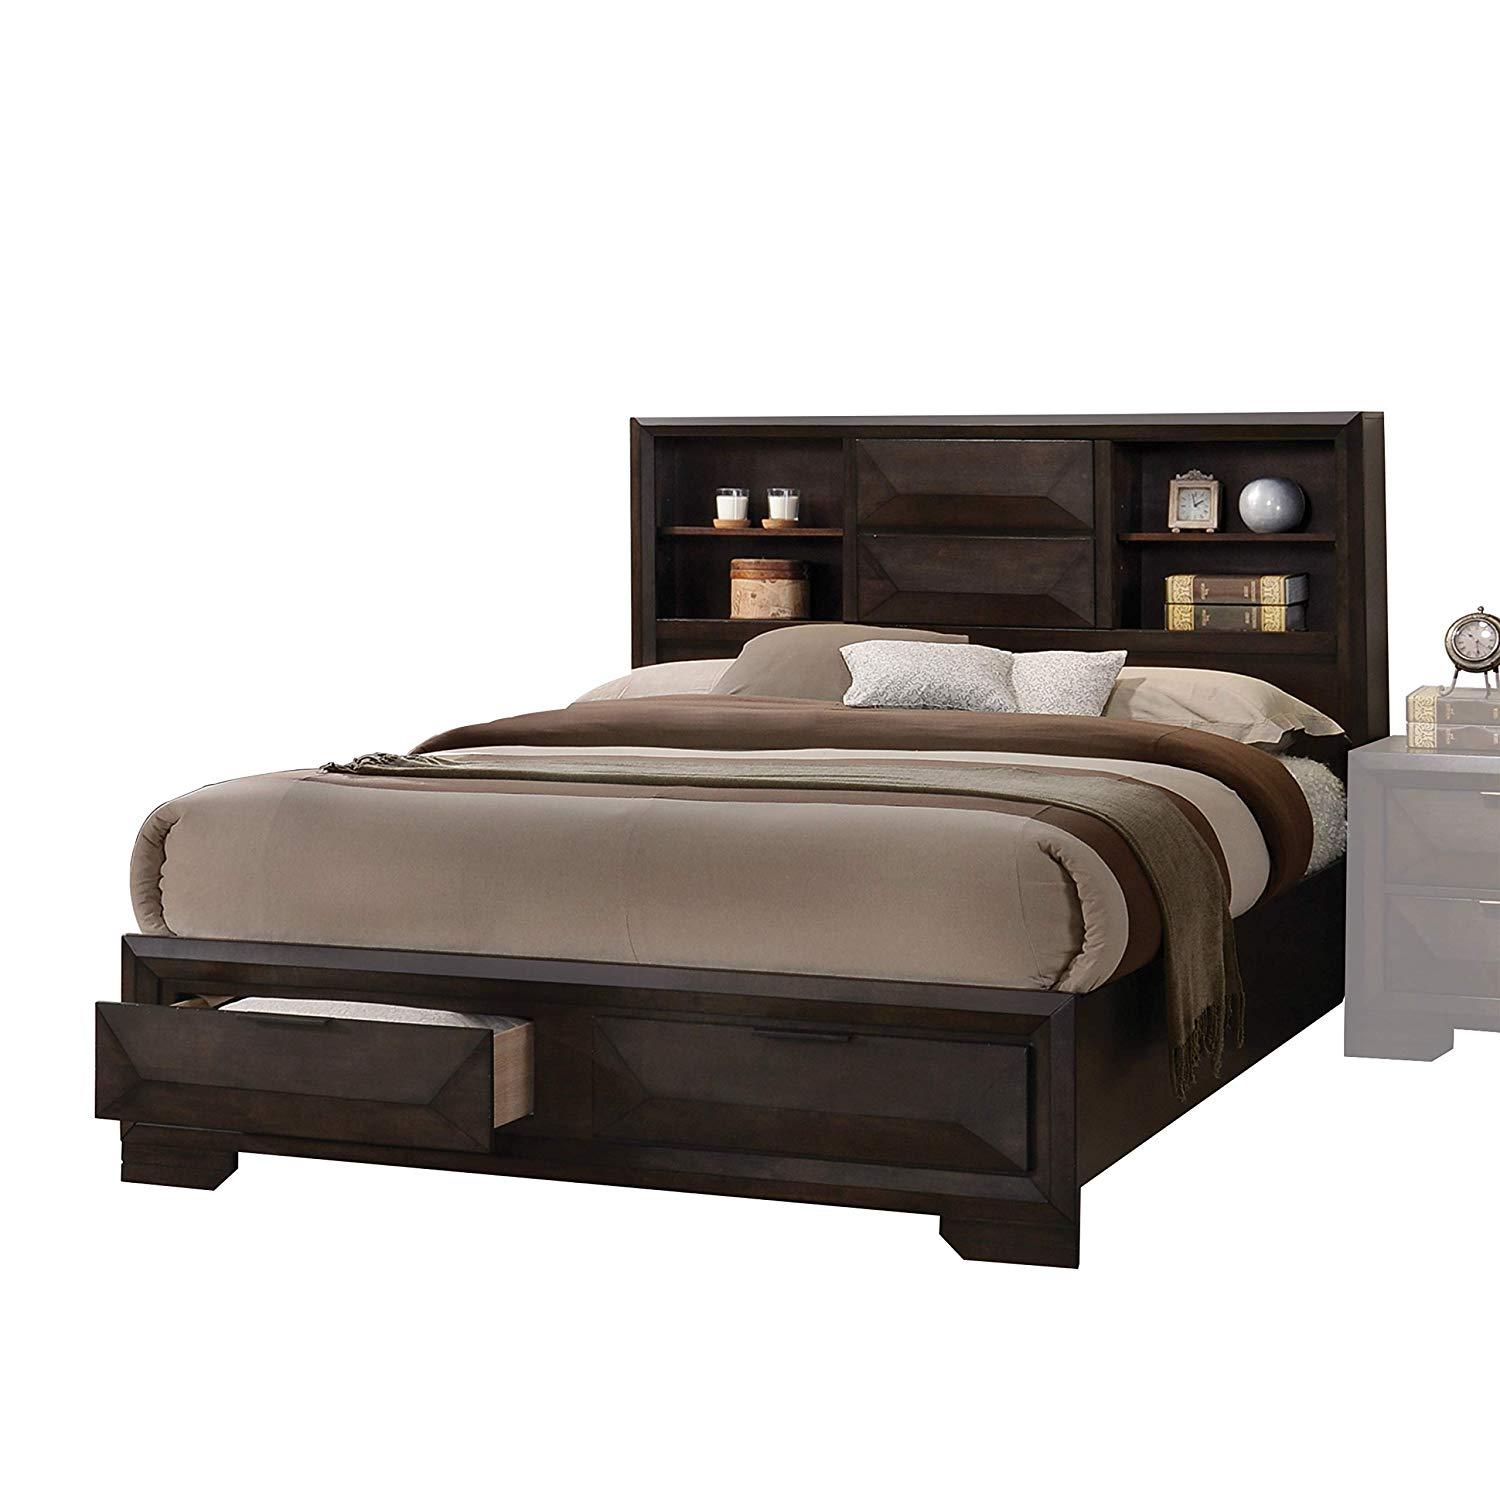 Acme Furniture Merveille-22870Q Storage Bed